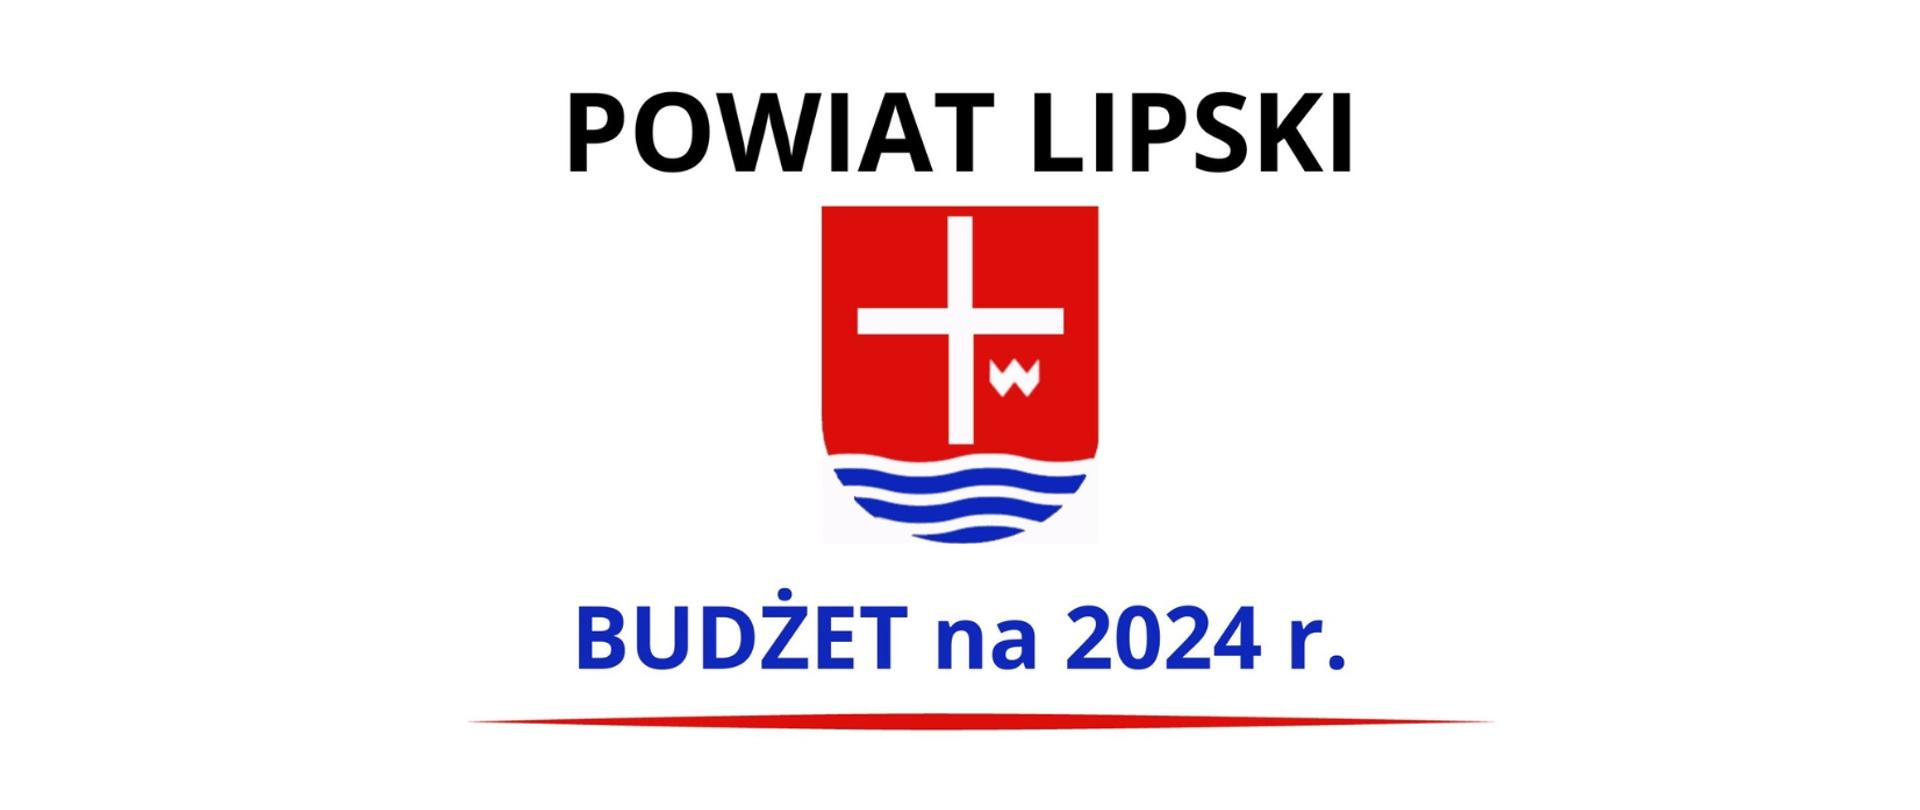 Na środku grafiki znajduje się herb Powiatu Lipskiego. Na górze czarny napis: Powiat Lipski, a na dole granatowy napis: Budżet na 2024 r. podkreślony czerwona linią. Tło białe.